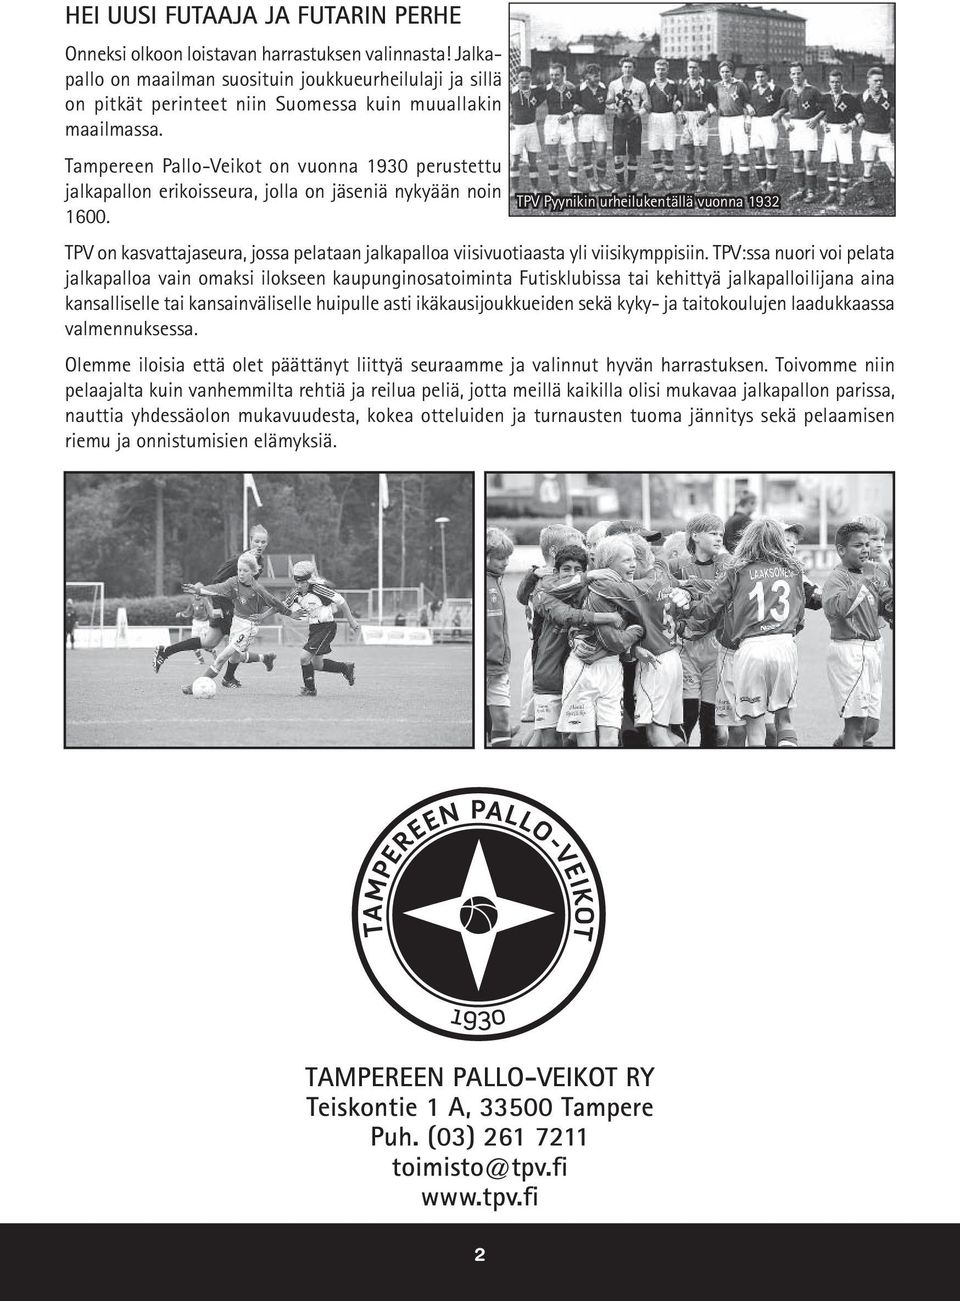 Tampereen Pallo-Veikot on vuonna 1930 perustettu jalkapallon erikoisseura, jolla on jäseniä nykyään noin 1600.